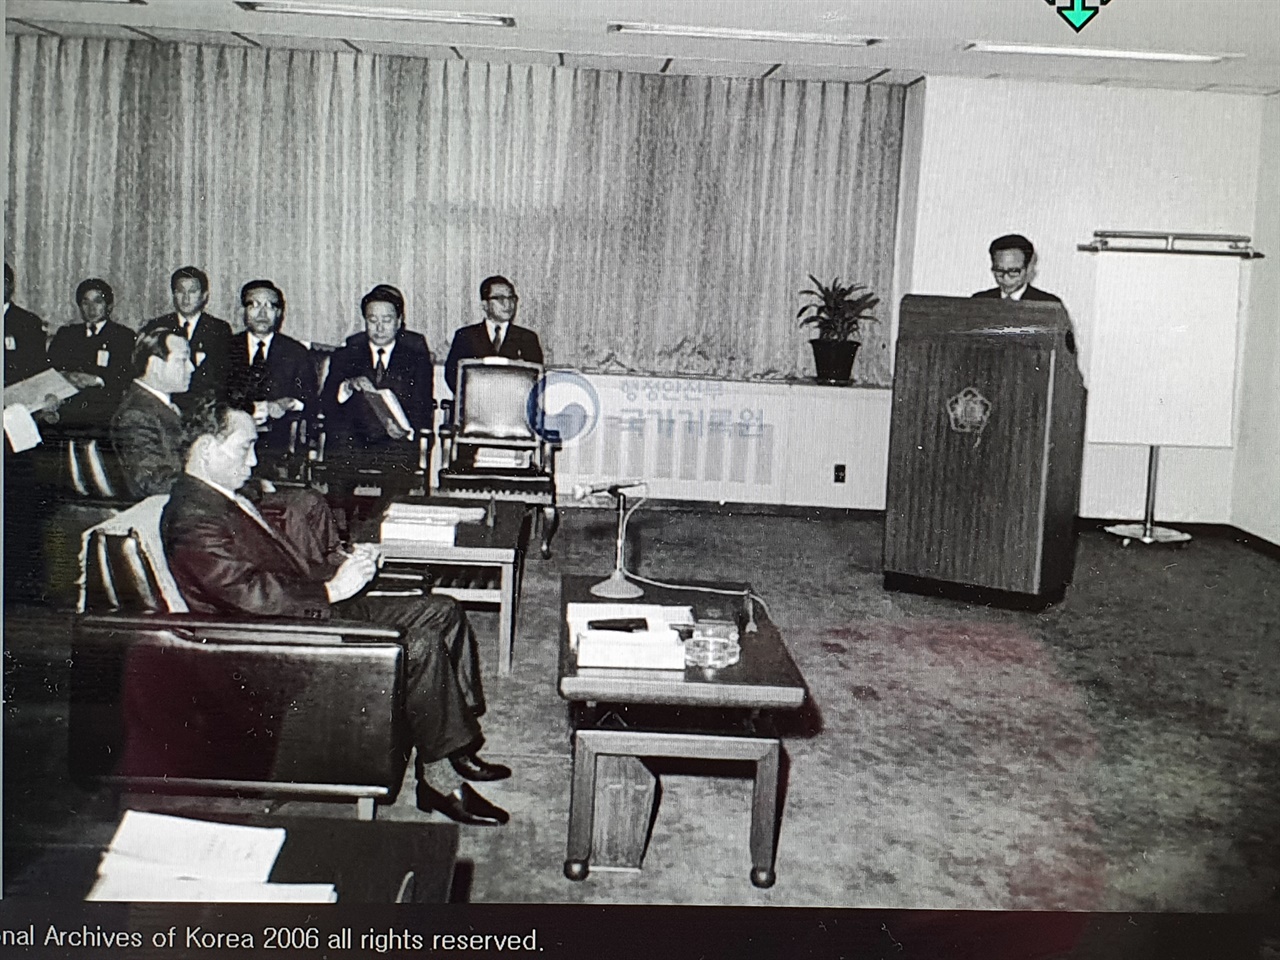 1972년 이낙선 상공부장관으로부터 업무보고를 받고 있는 박정희 대통령의 모습